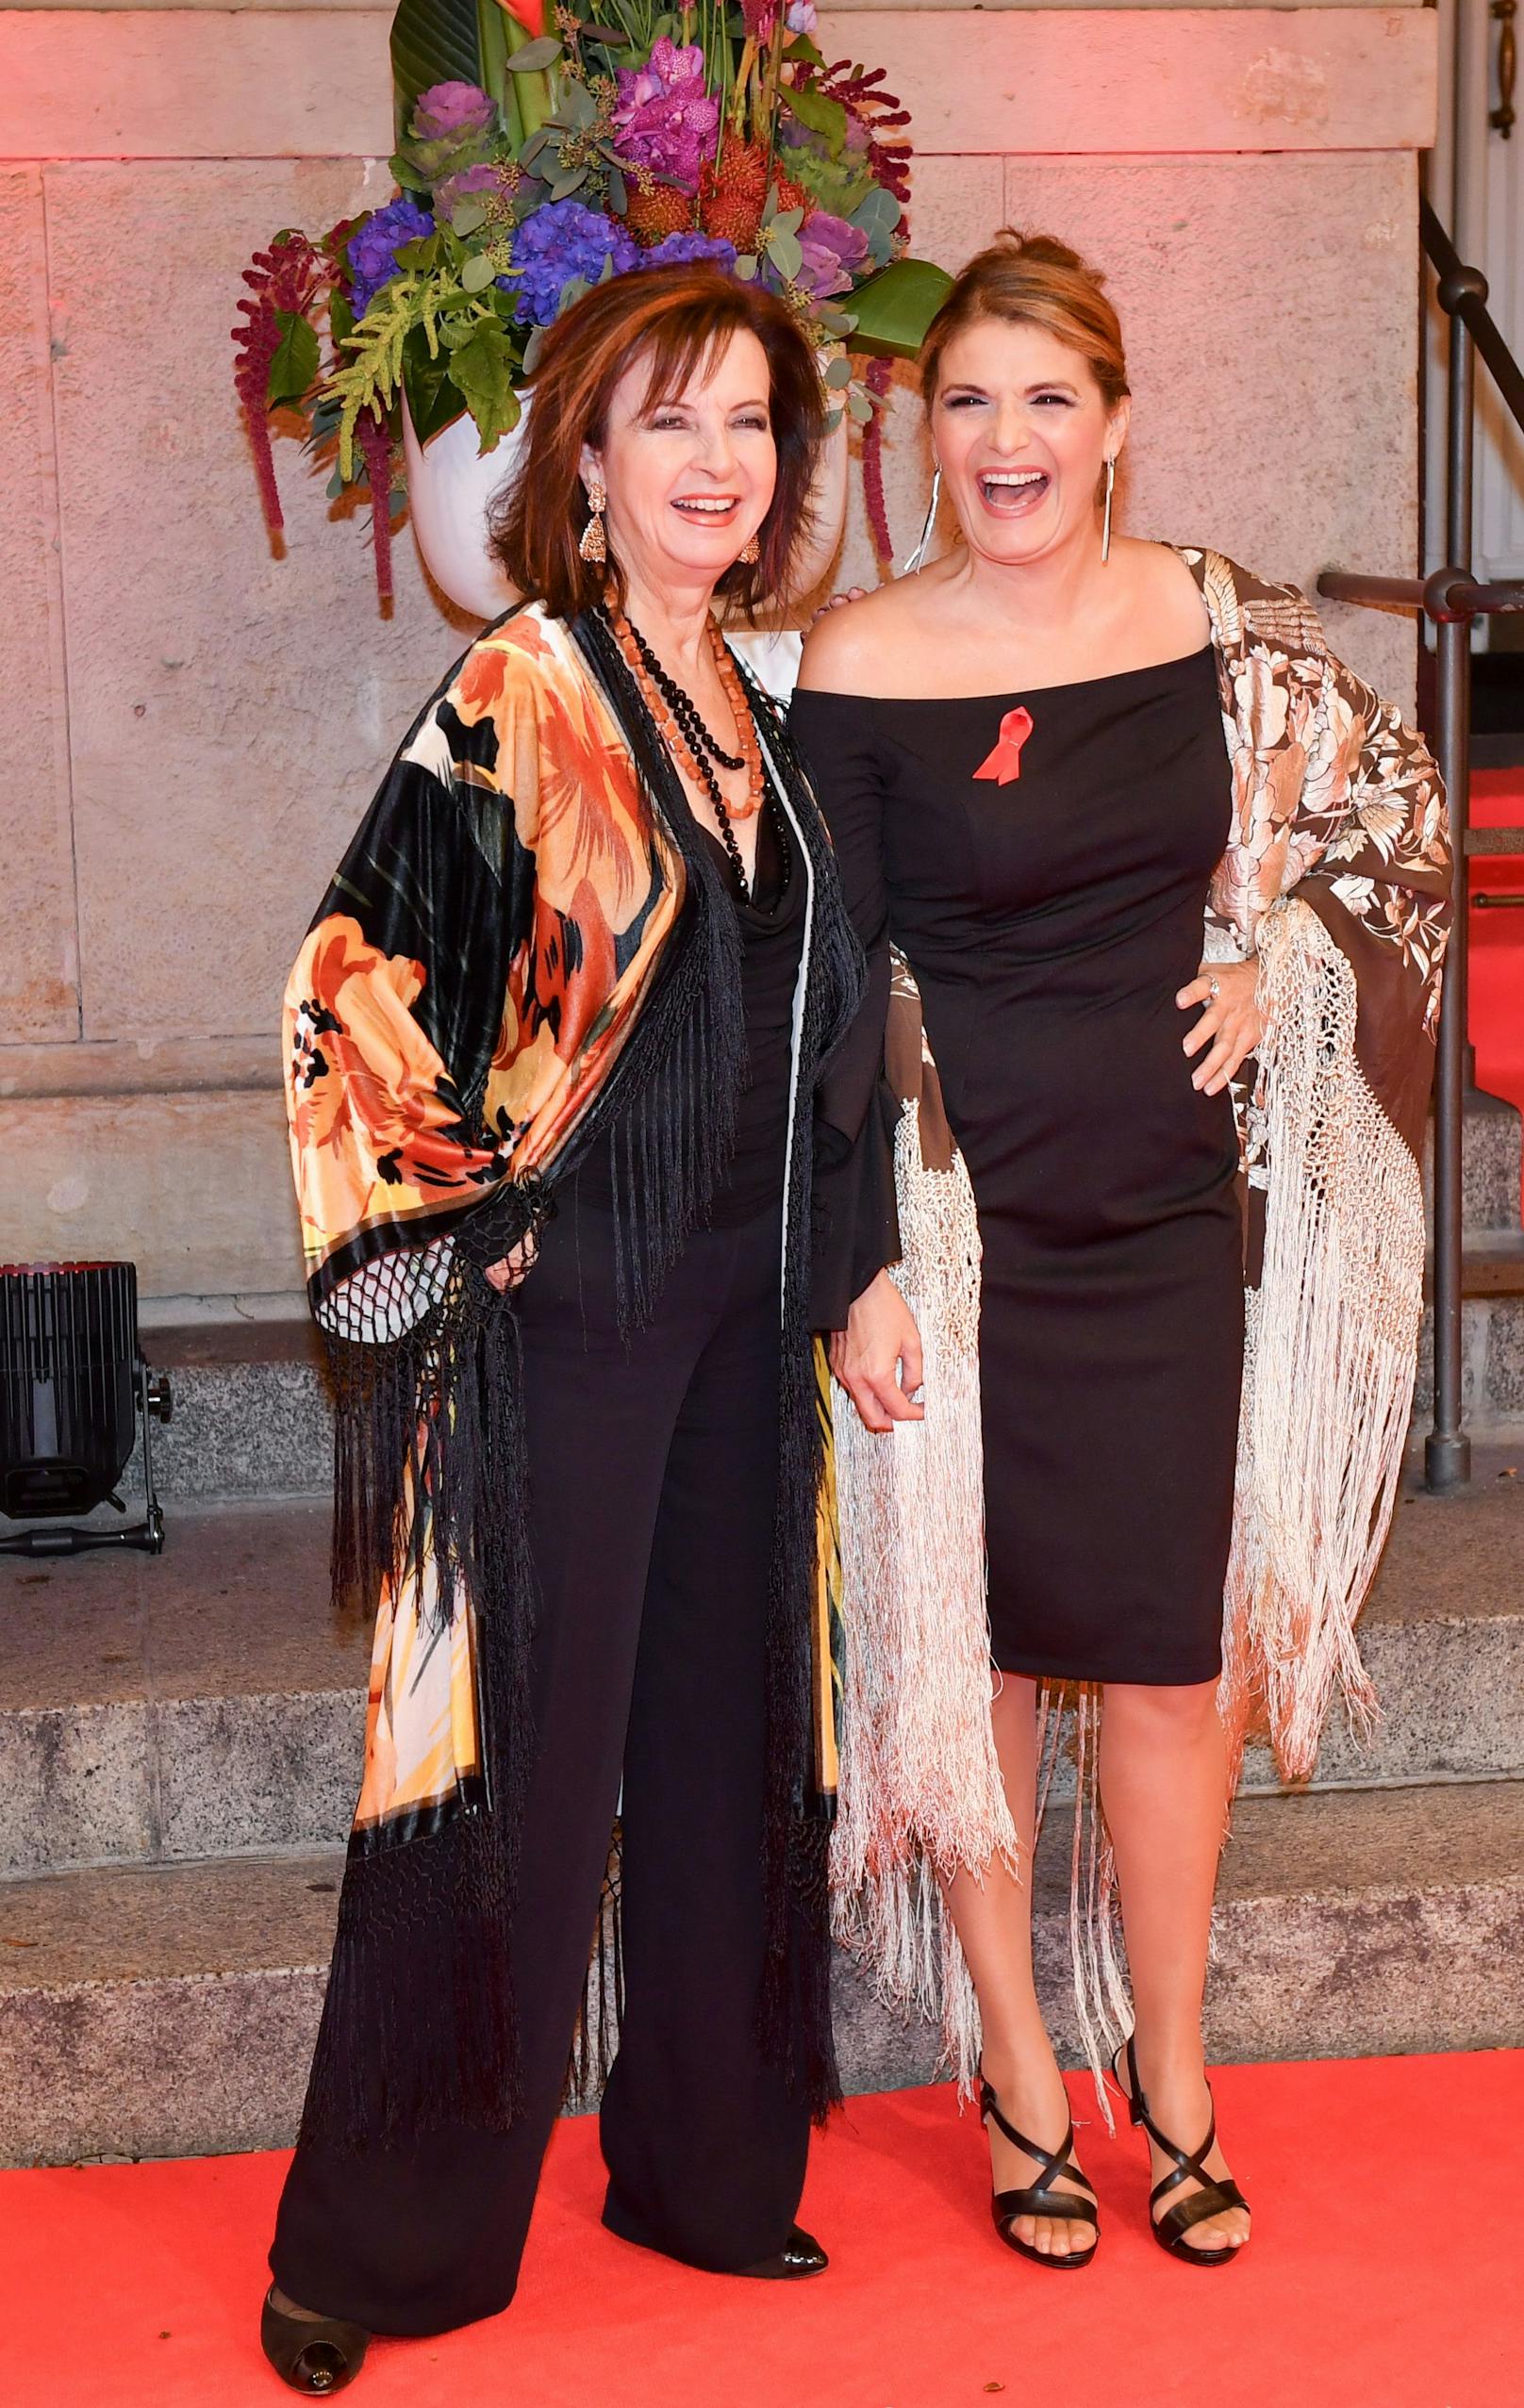 2017 zeigten sich "Baccara" wieder vereint: Mayte Mateos (links) und Maria Mendiola bei der Gala "Künstler gegen AIDS" in Berlin.